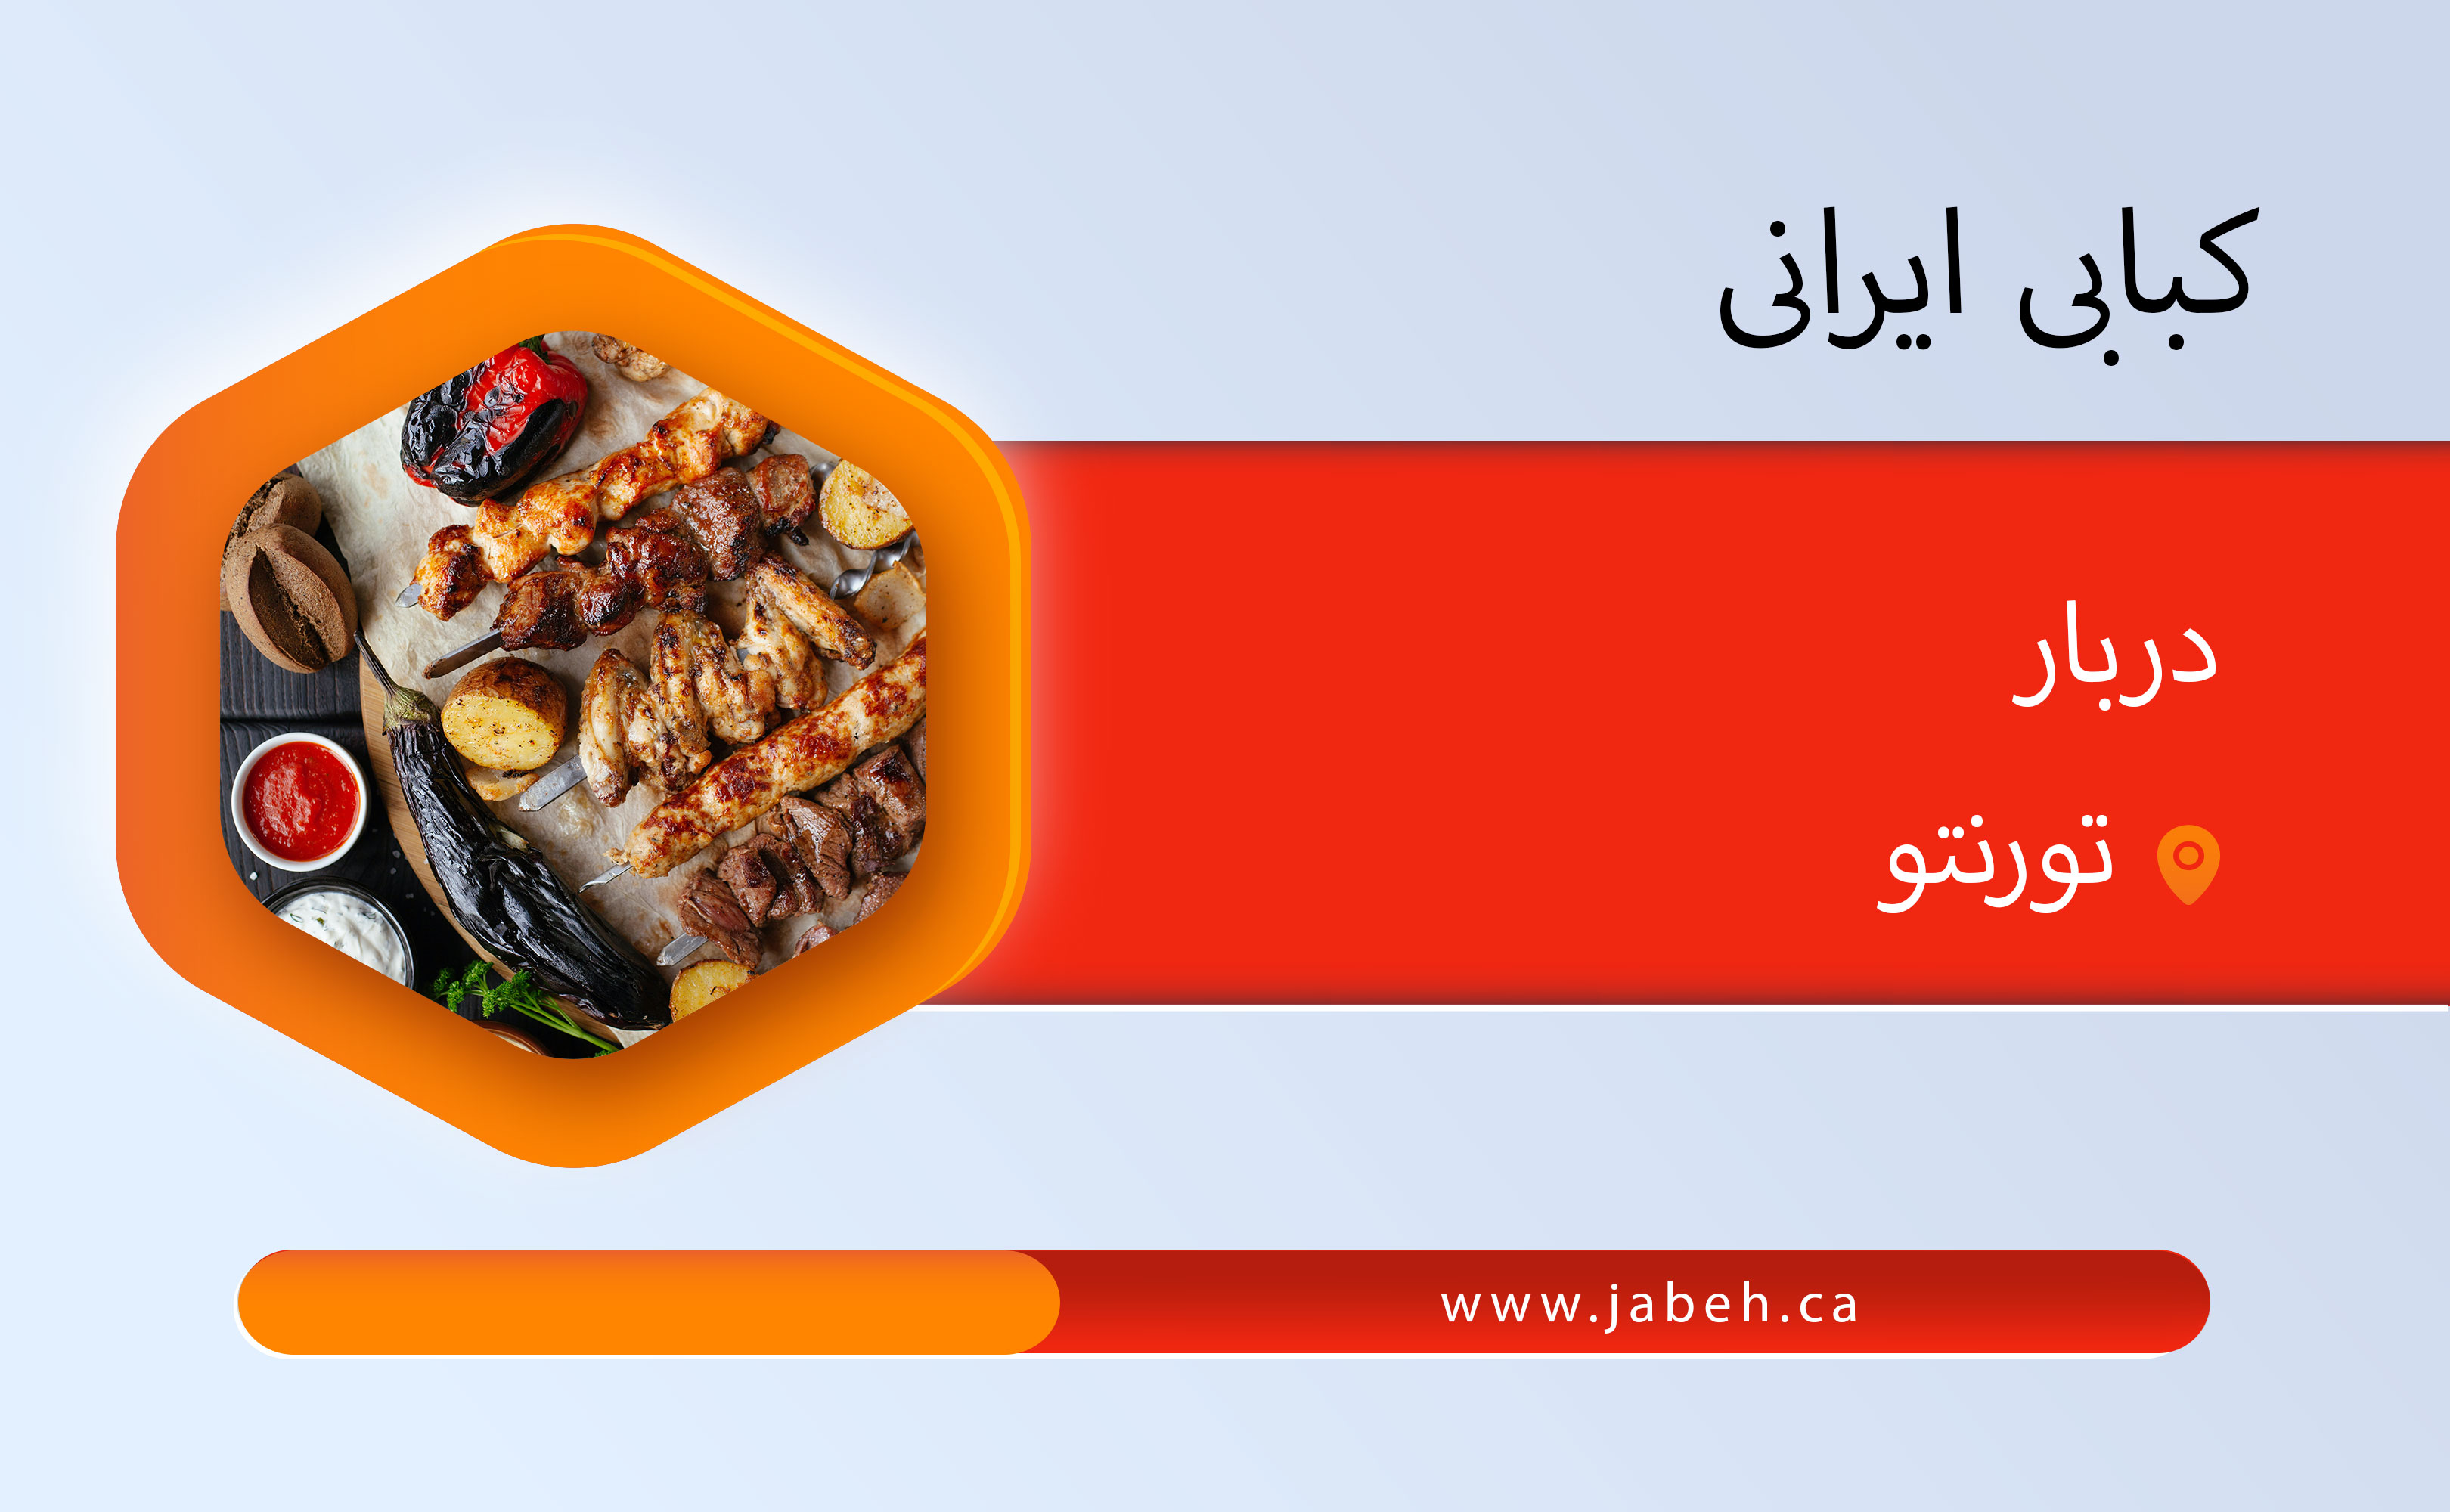 Darbar Persian Grill in Toronto